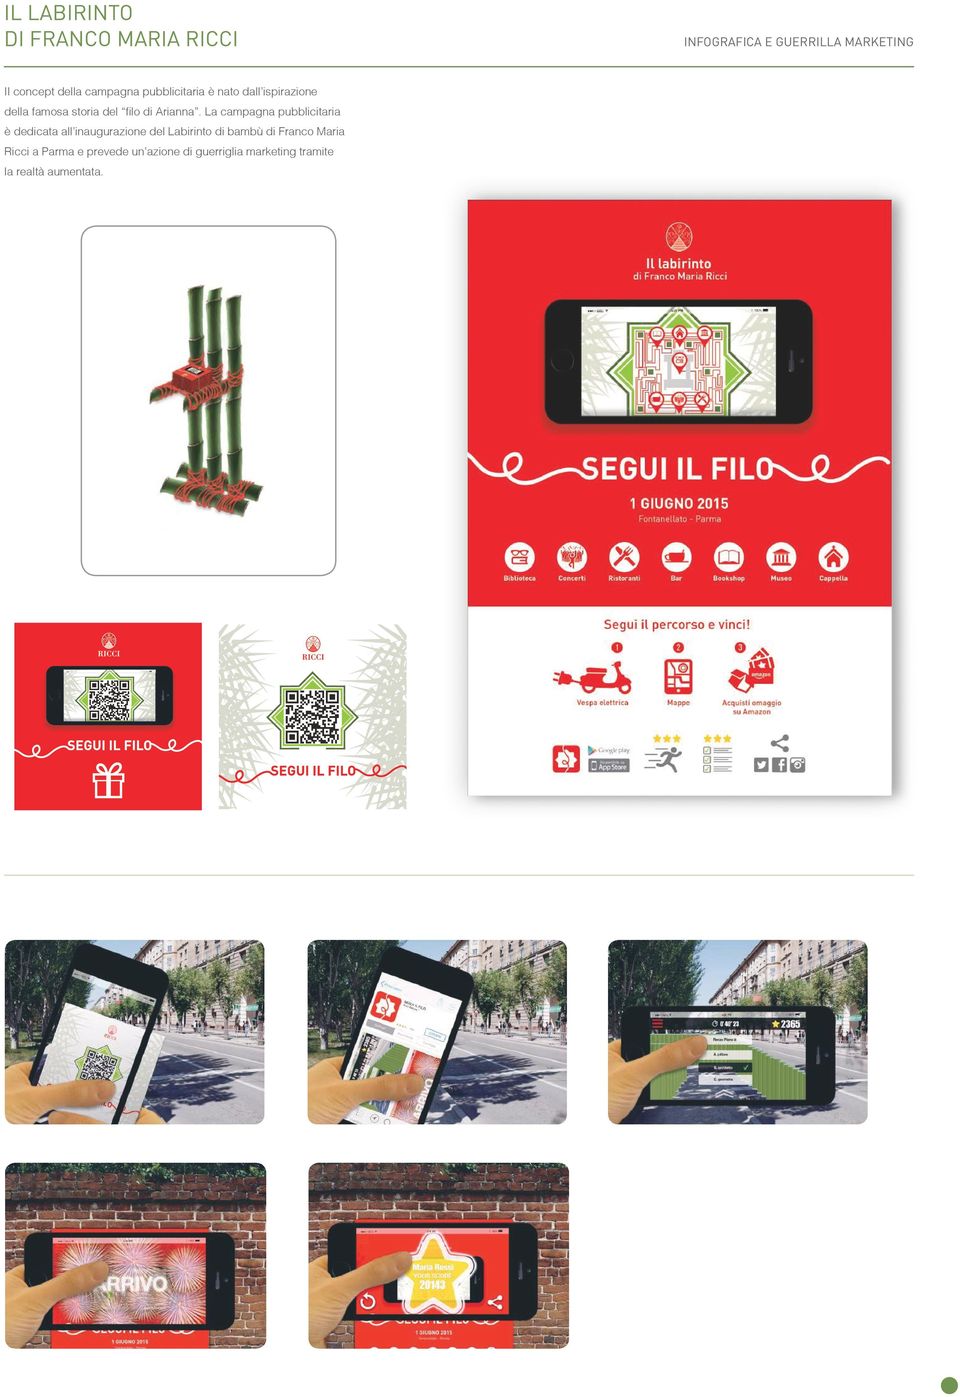 La campagna pubblicitaria è dedicata all inaugurazione del Labirinto di bambù di Franco